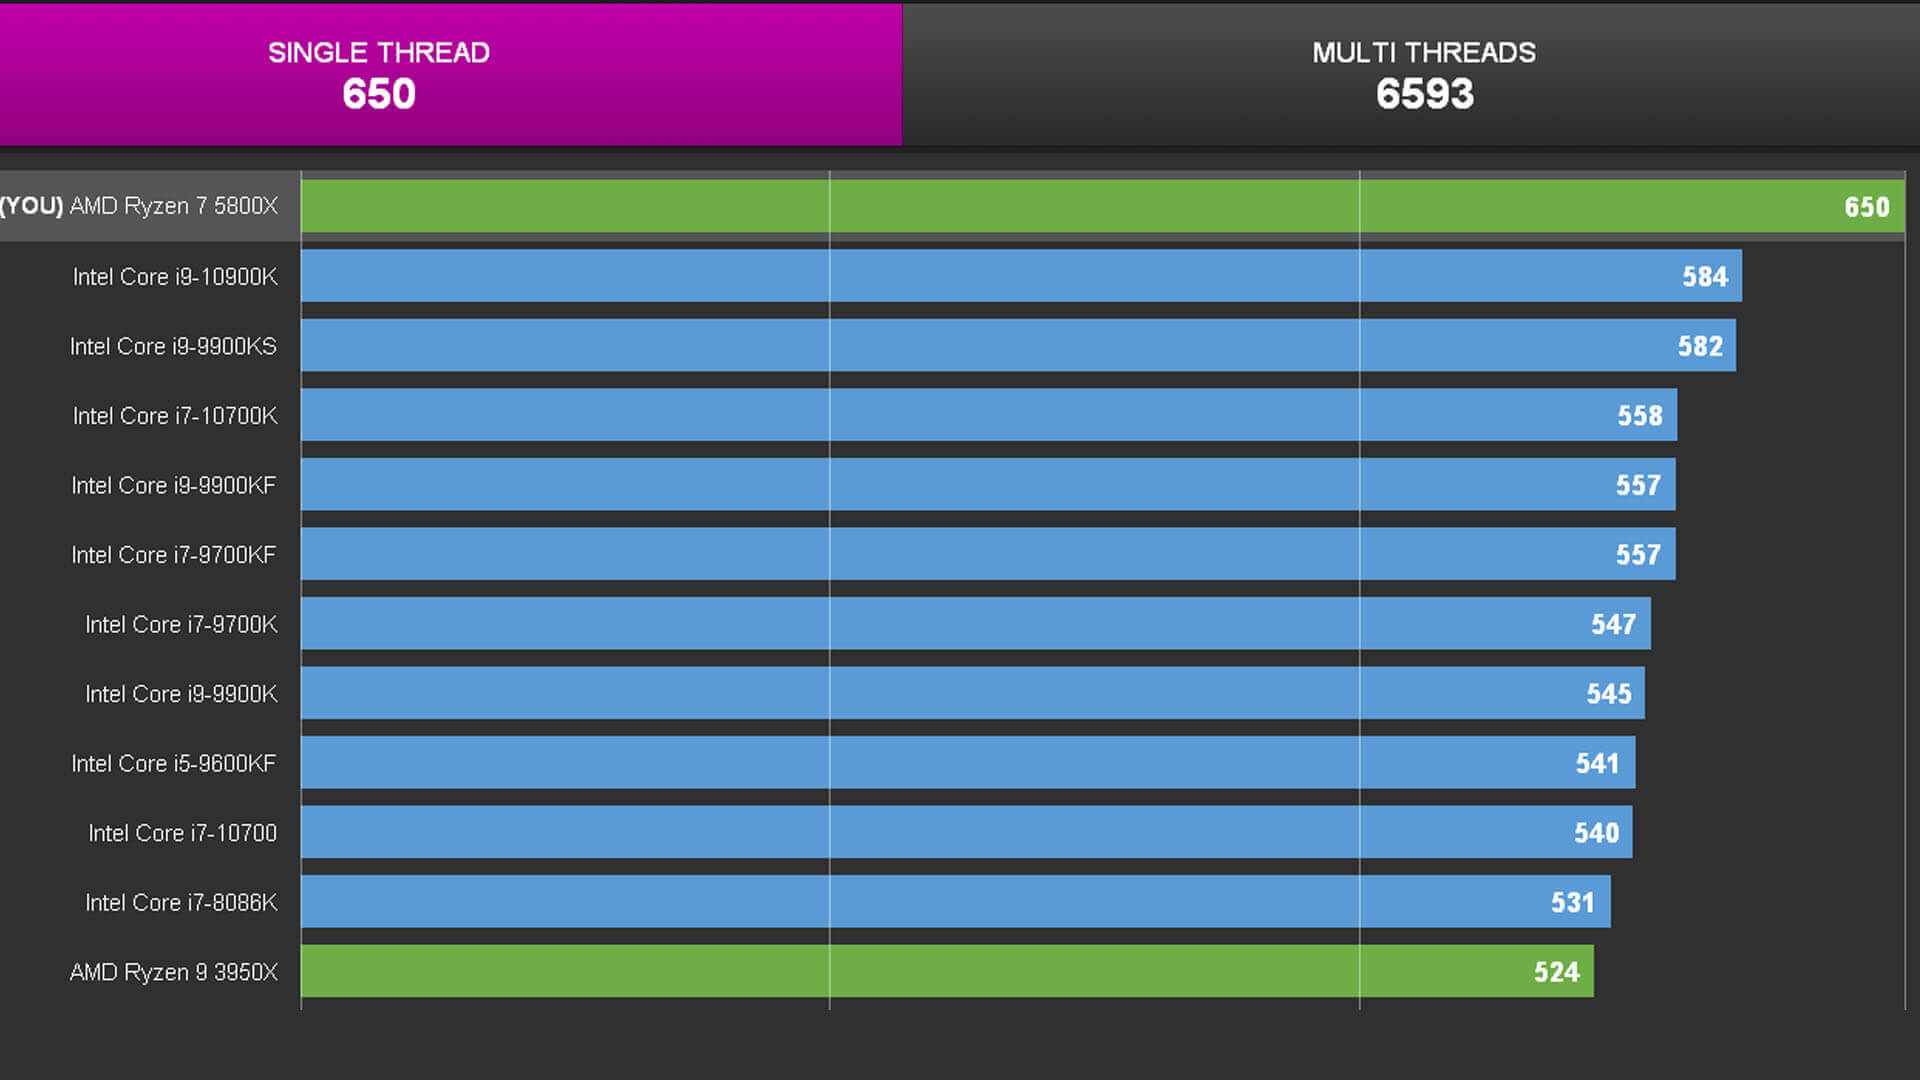 Zen 3 Mimarili AMD Ryzen 7 5800X, CPU-Z Tek Çekirdek Performansında Intel Core i9-10900K’dan %11 Daha Hızlı